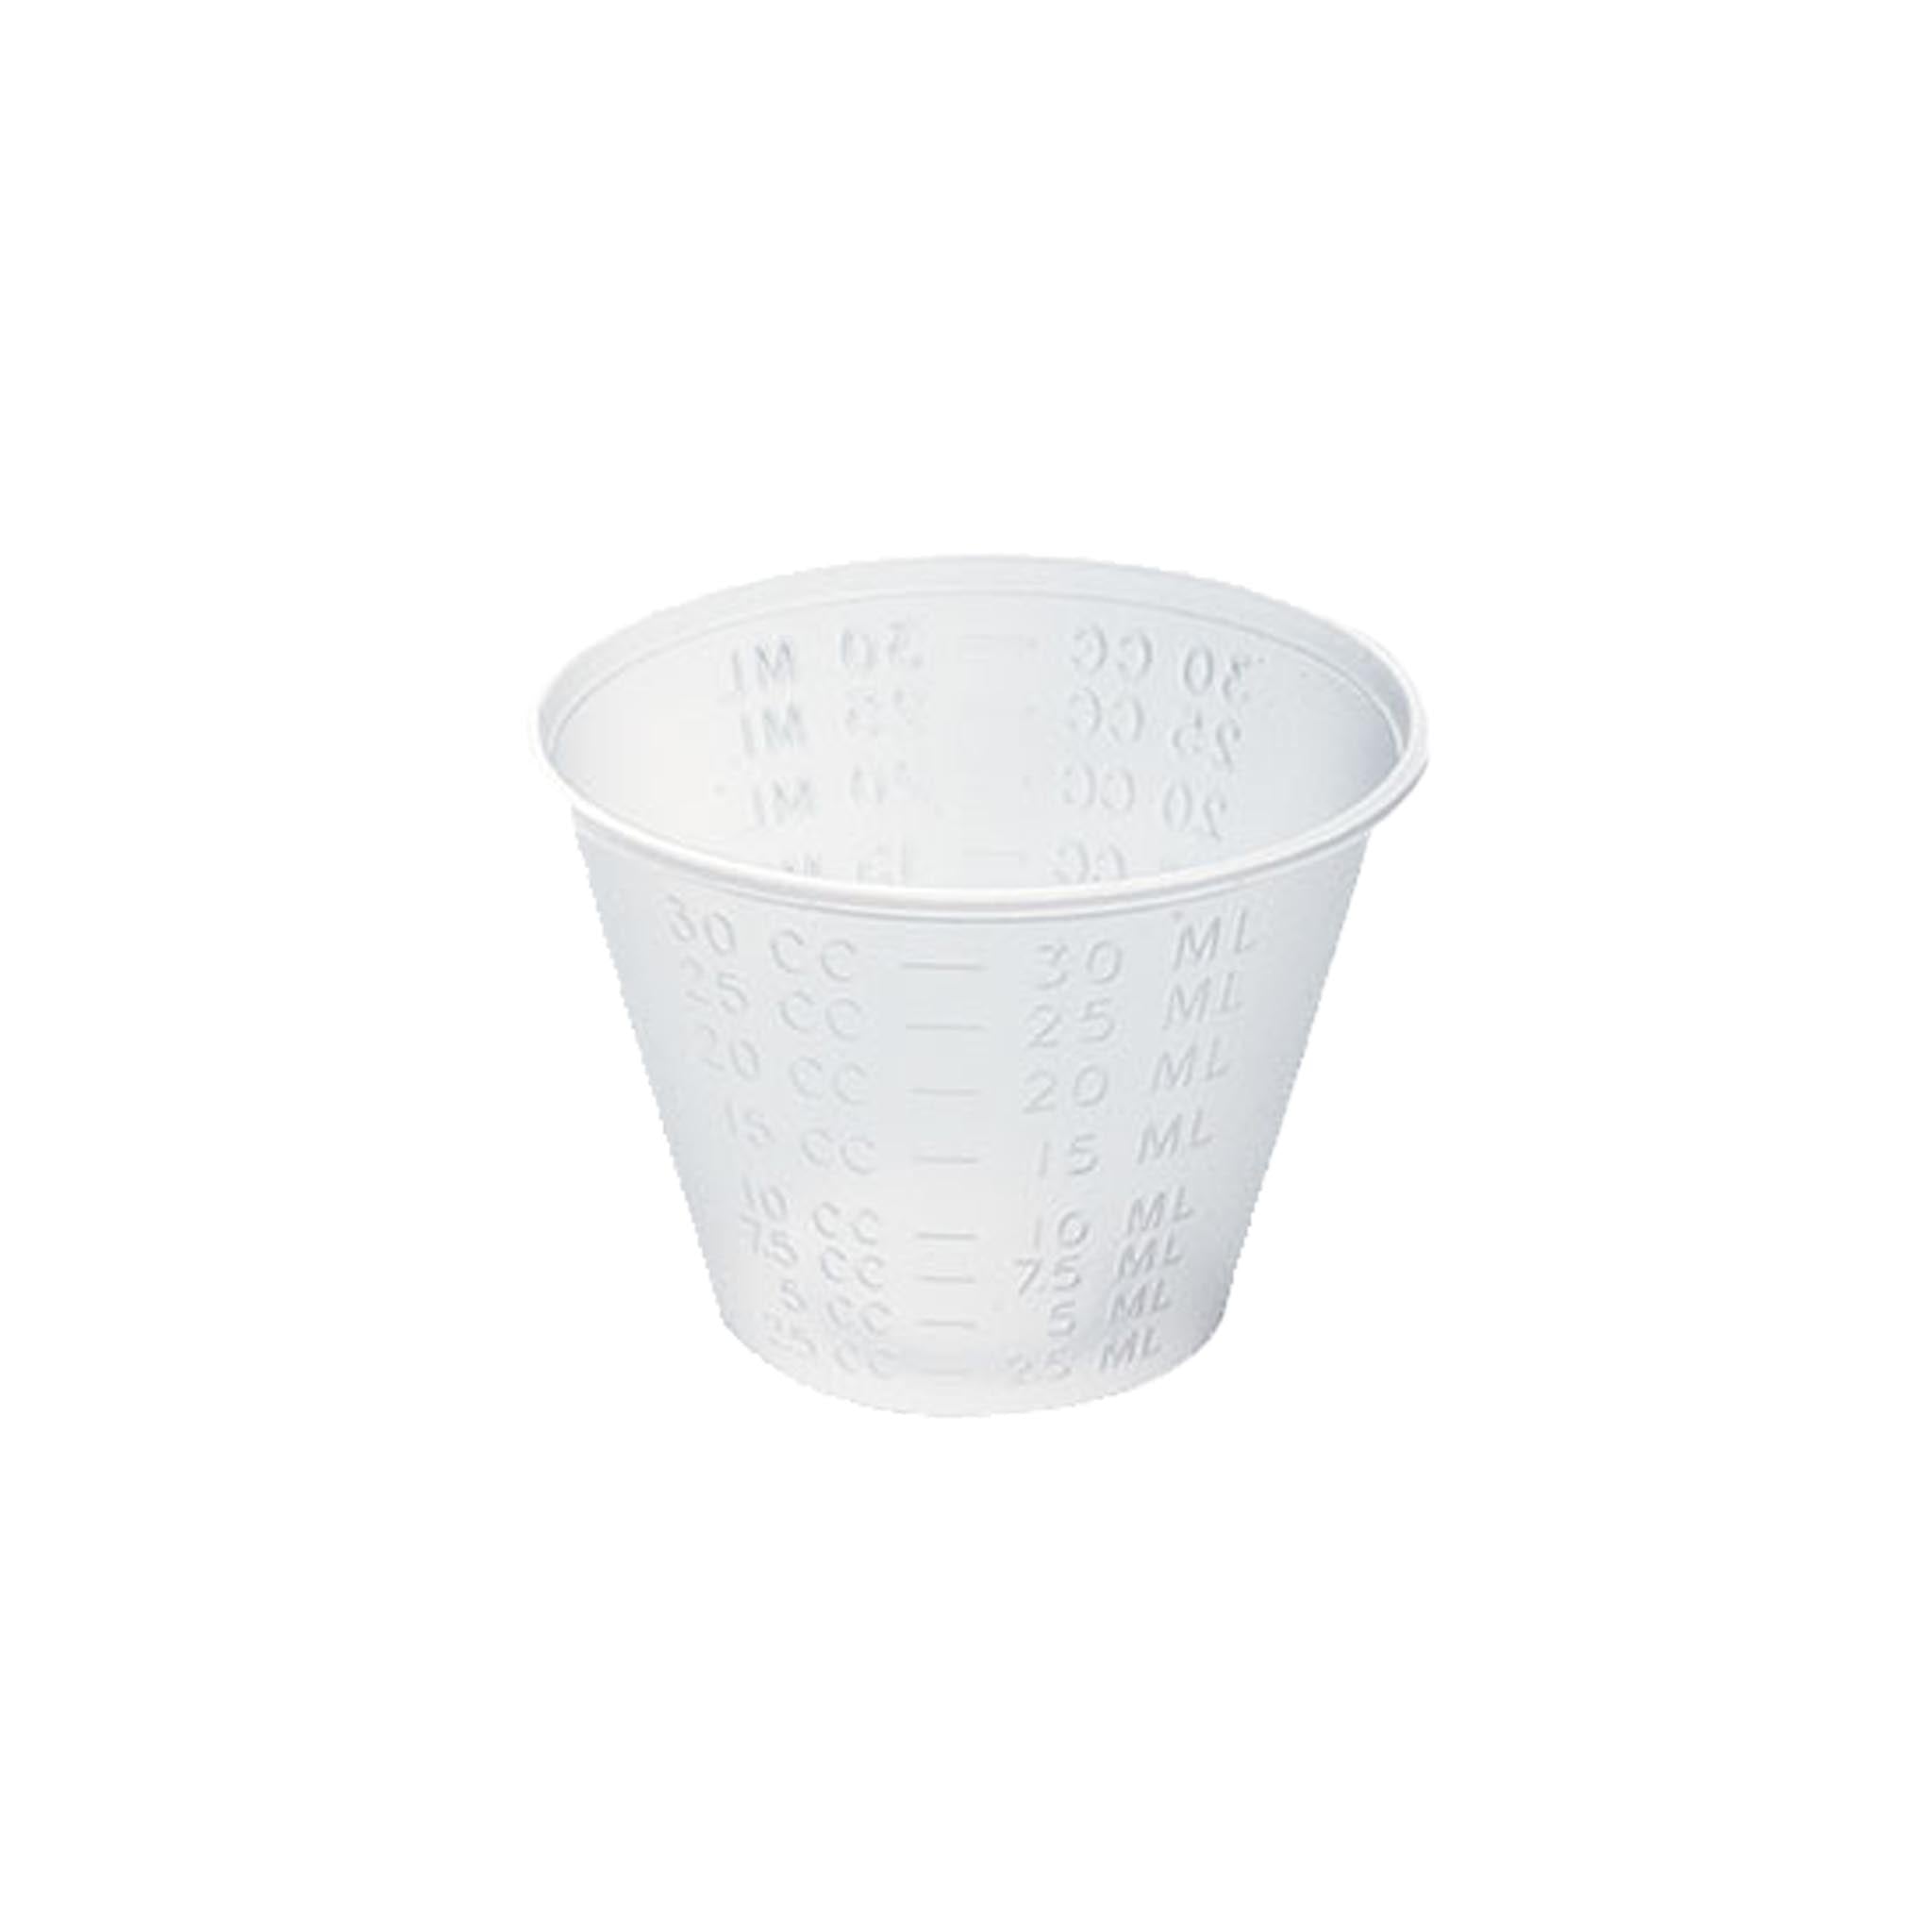 1 oz Measuring Cup - Wholesale Supplies Plus